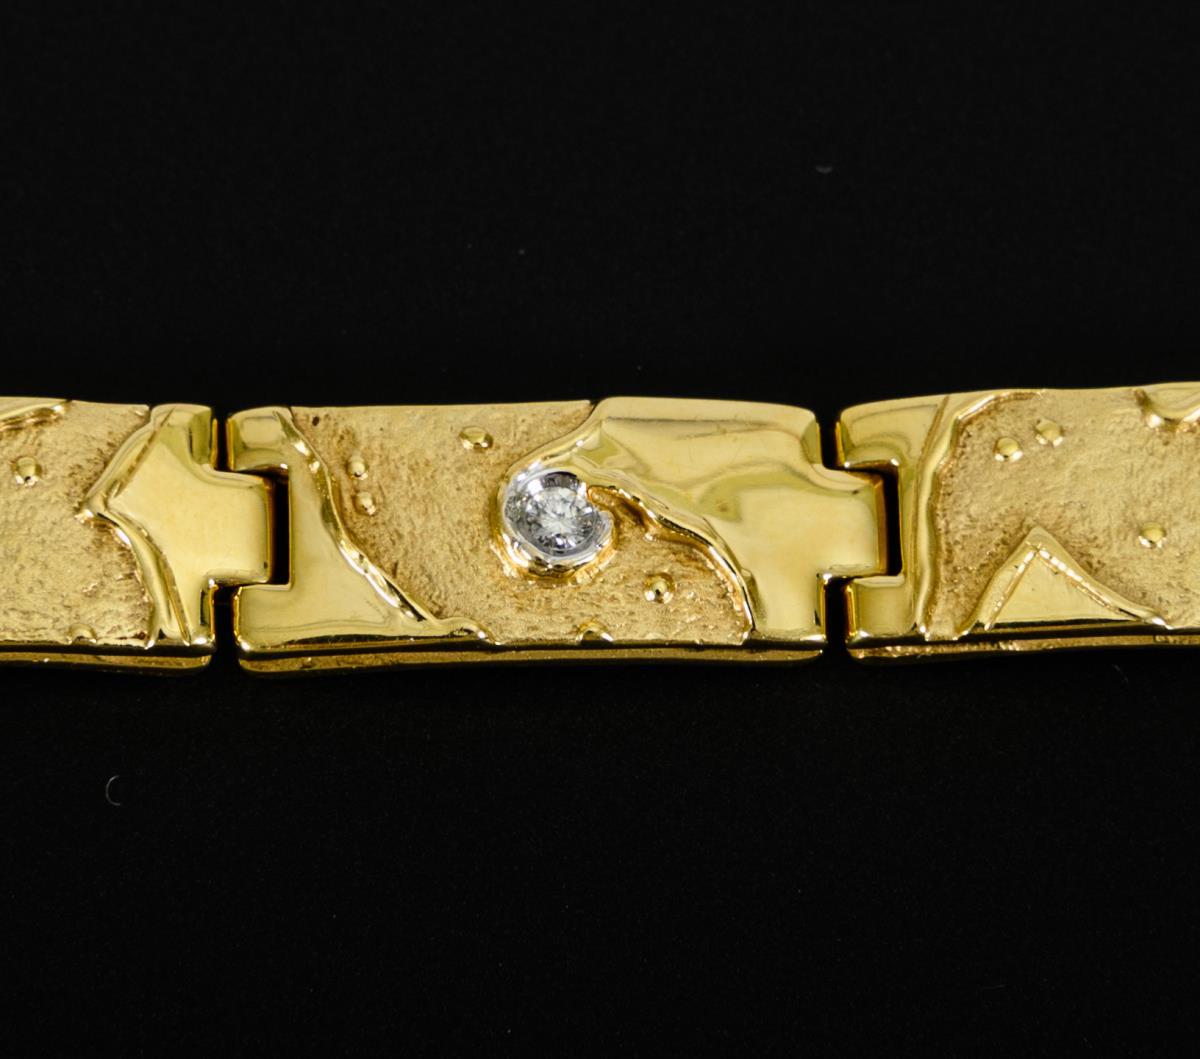 Armband mit Brillanten. - Image 3 of 3